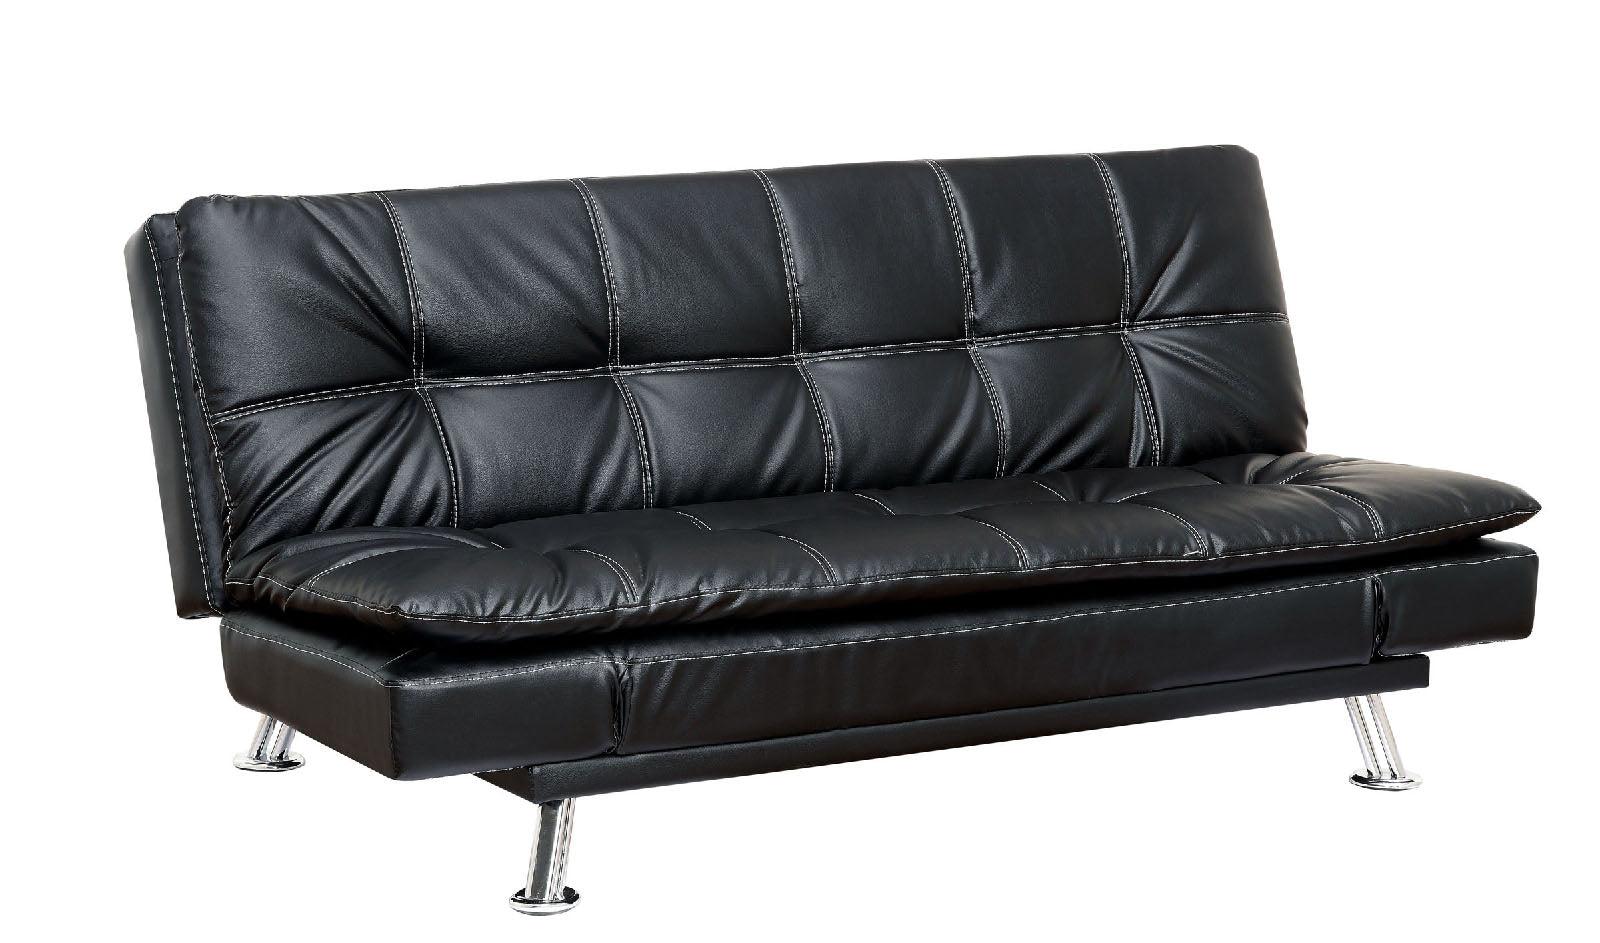 Furniture of America HAUSER CM2677BK Futon sofa